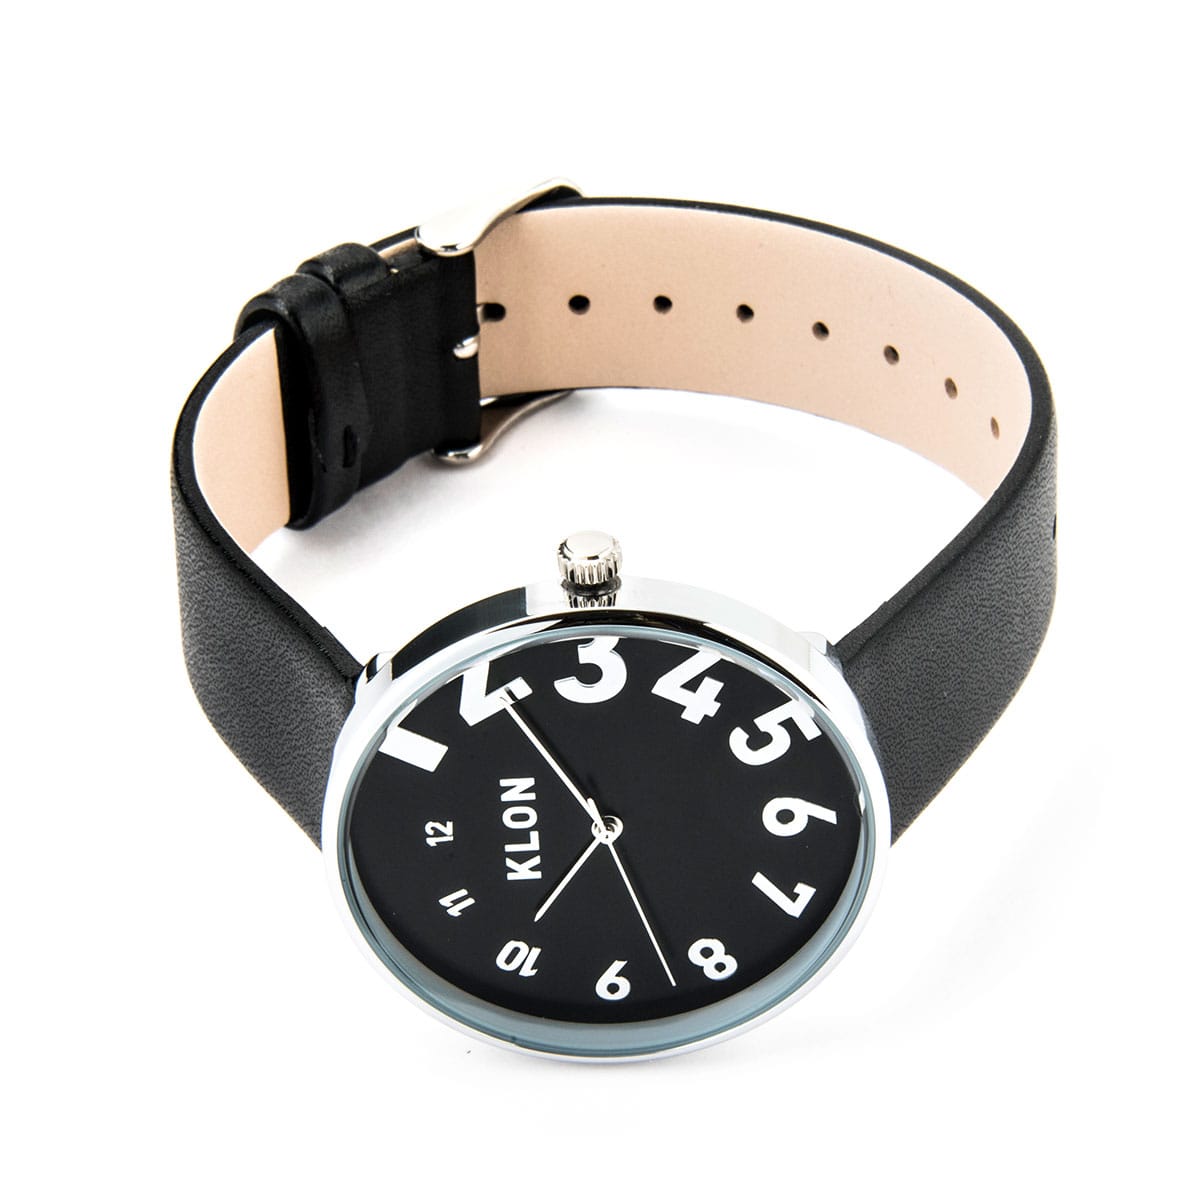 KLON 腕時計 レディース メンズ クローン おしゃれ 時計 ブランド アナログ ギフト プレゼント EDDY TIME BLACK(-  ブラック): サックスバー｜ANA Mall｜マイルが貯まる・使えるショッピングモール